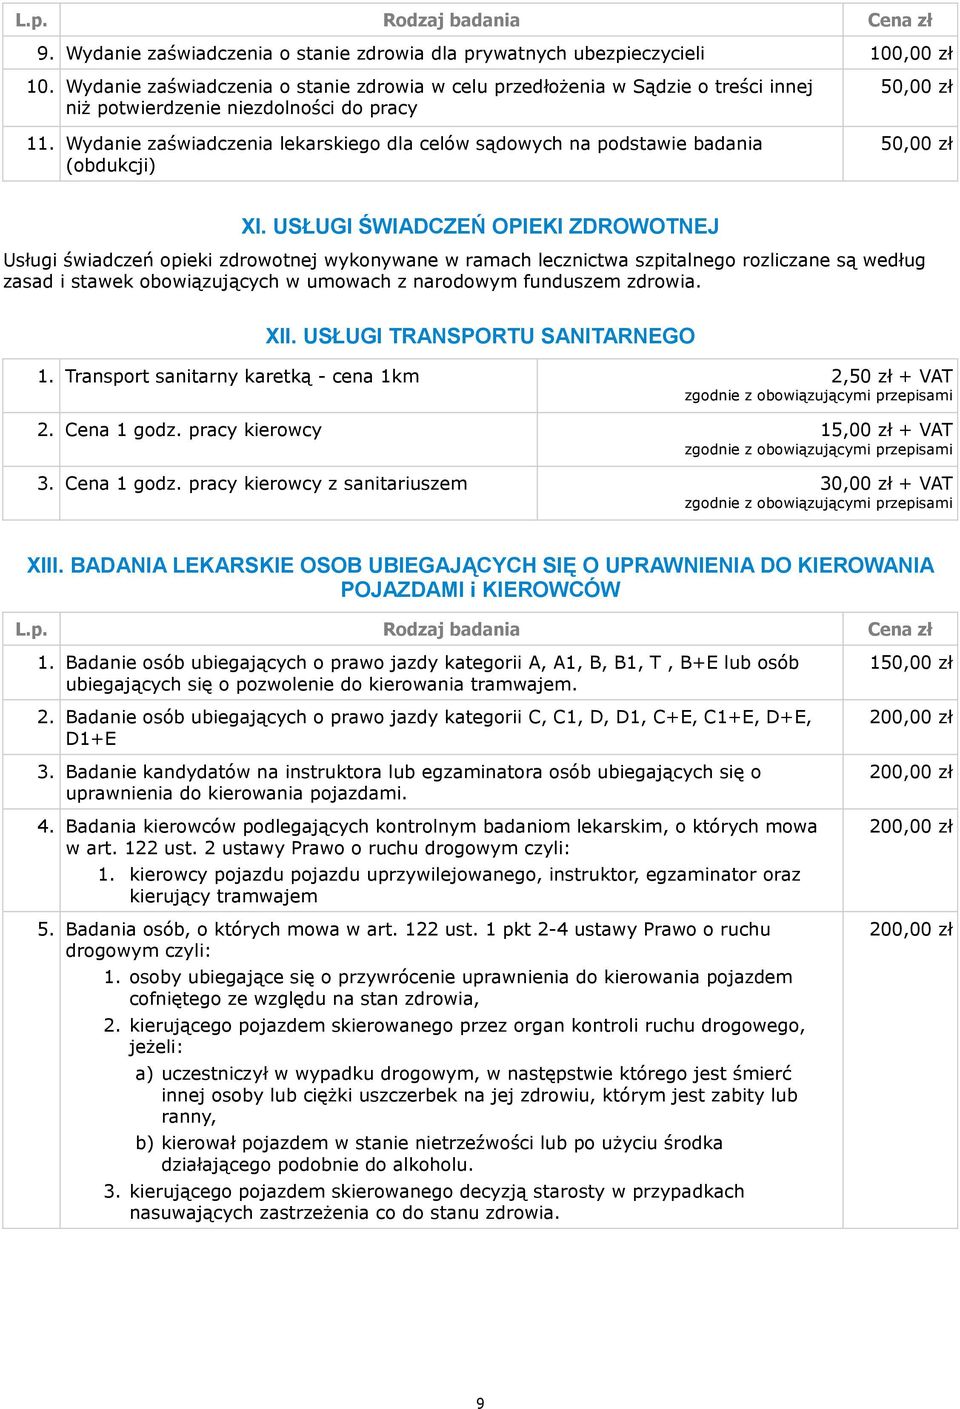 Wydanie zaświadczenia lekarskiego dla celów sądowych na podstawie badania (obdukcji) 50,00 zł 50,00 zł XI.